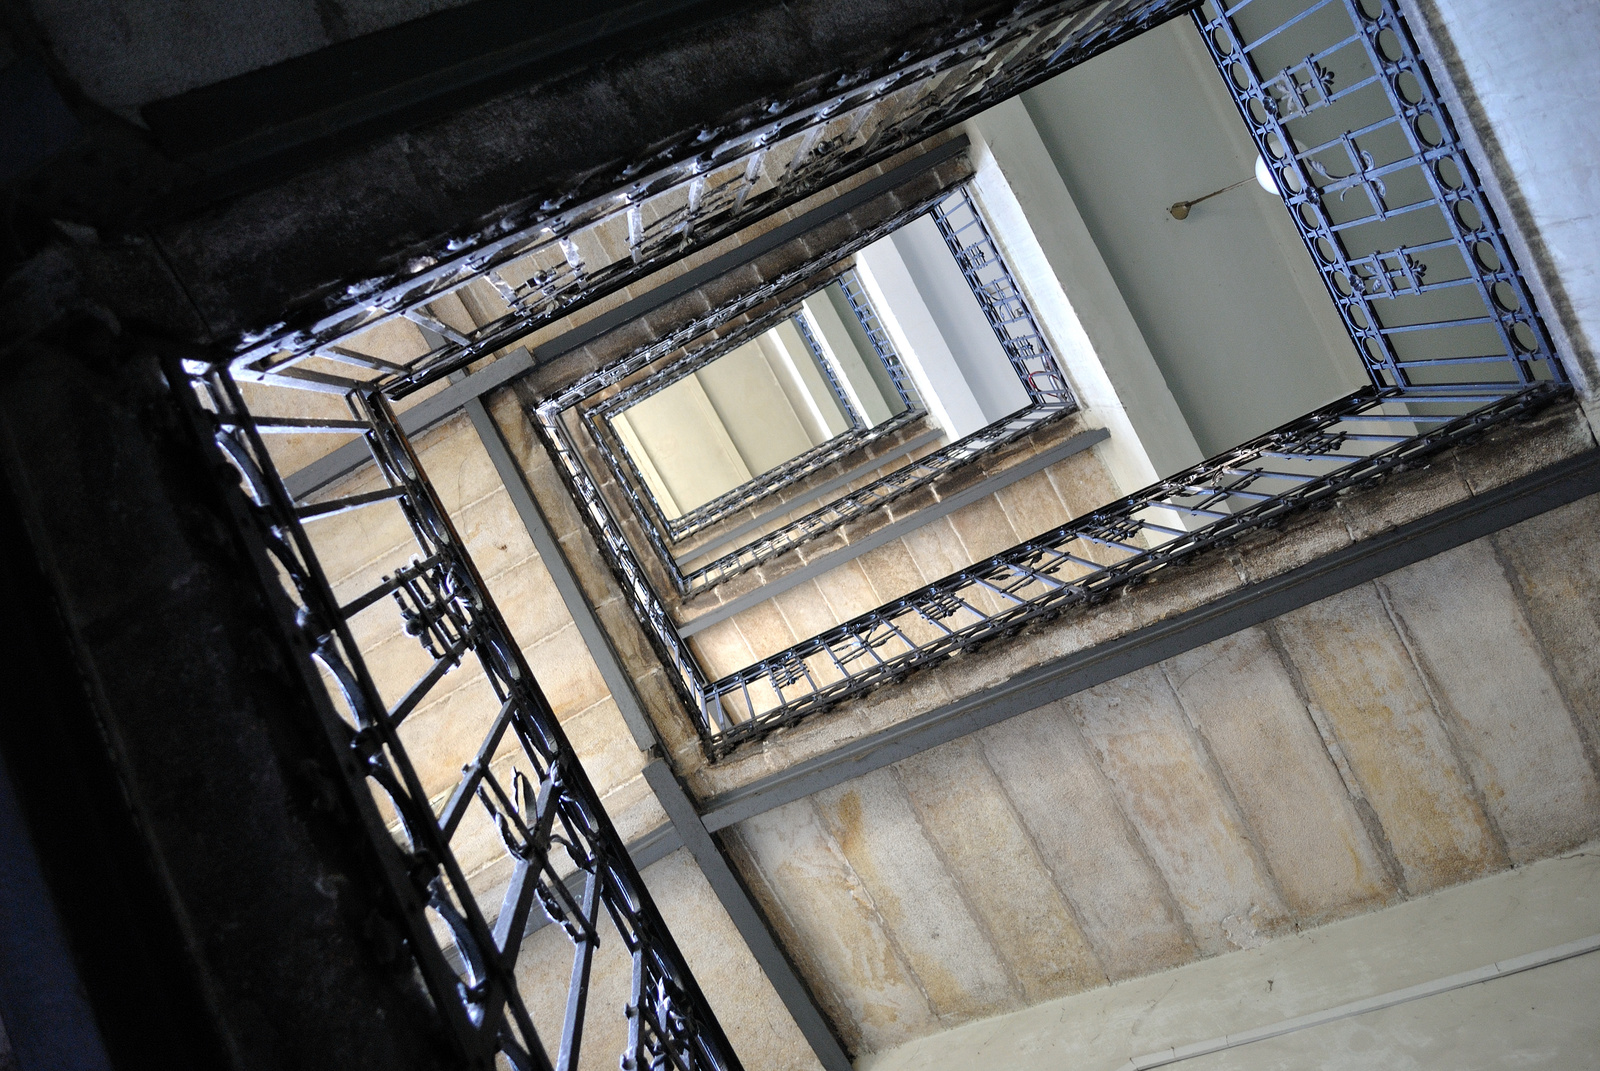 Lépcsőház - Ganz-Mávag munkáslakótelep